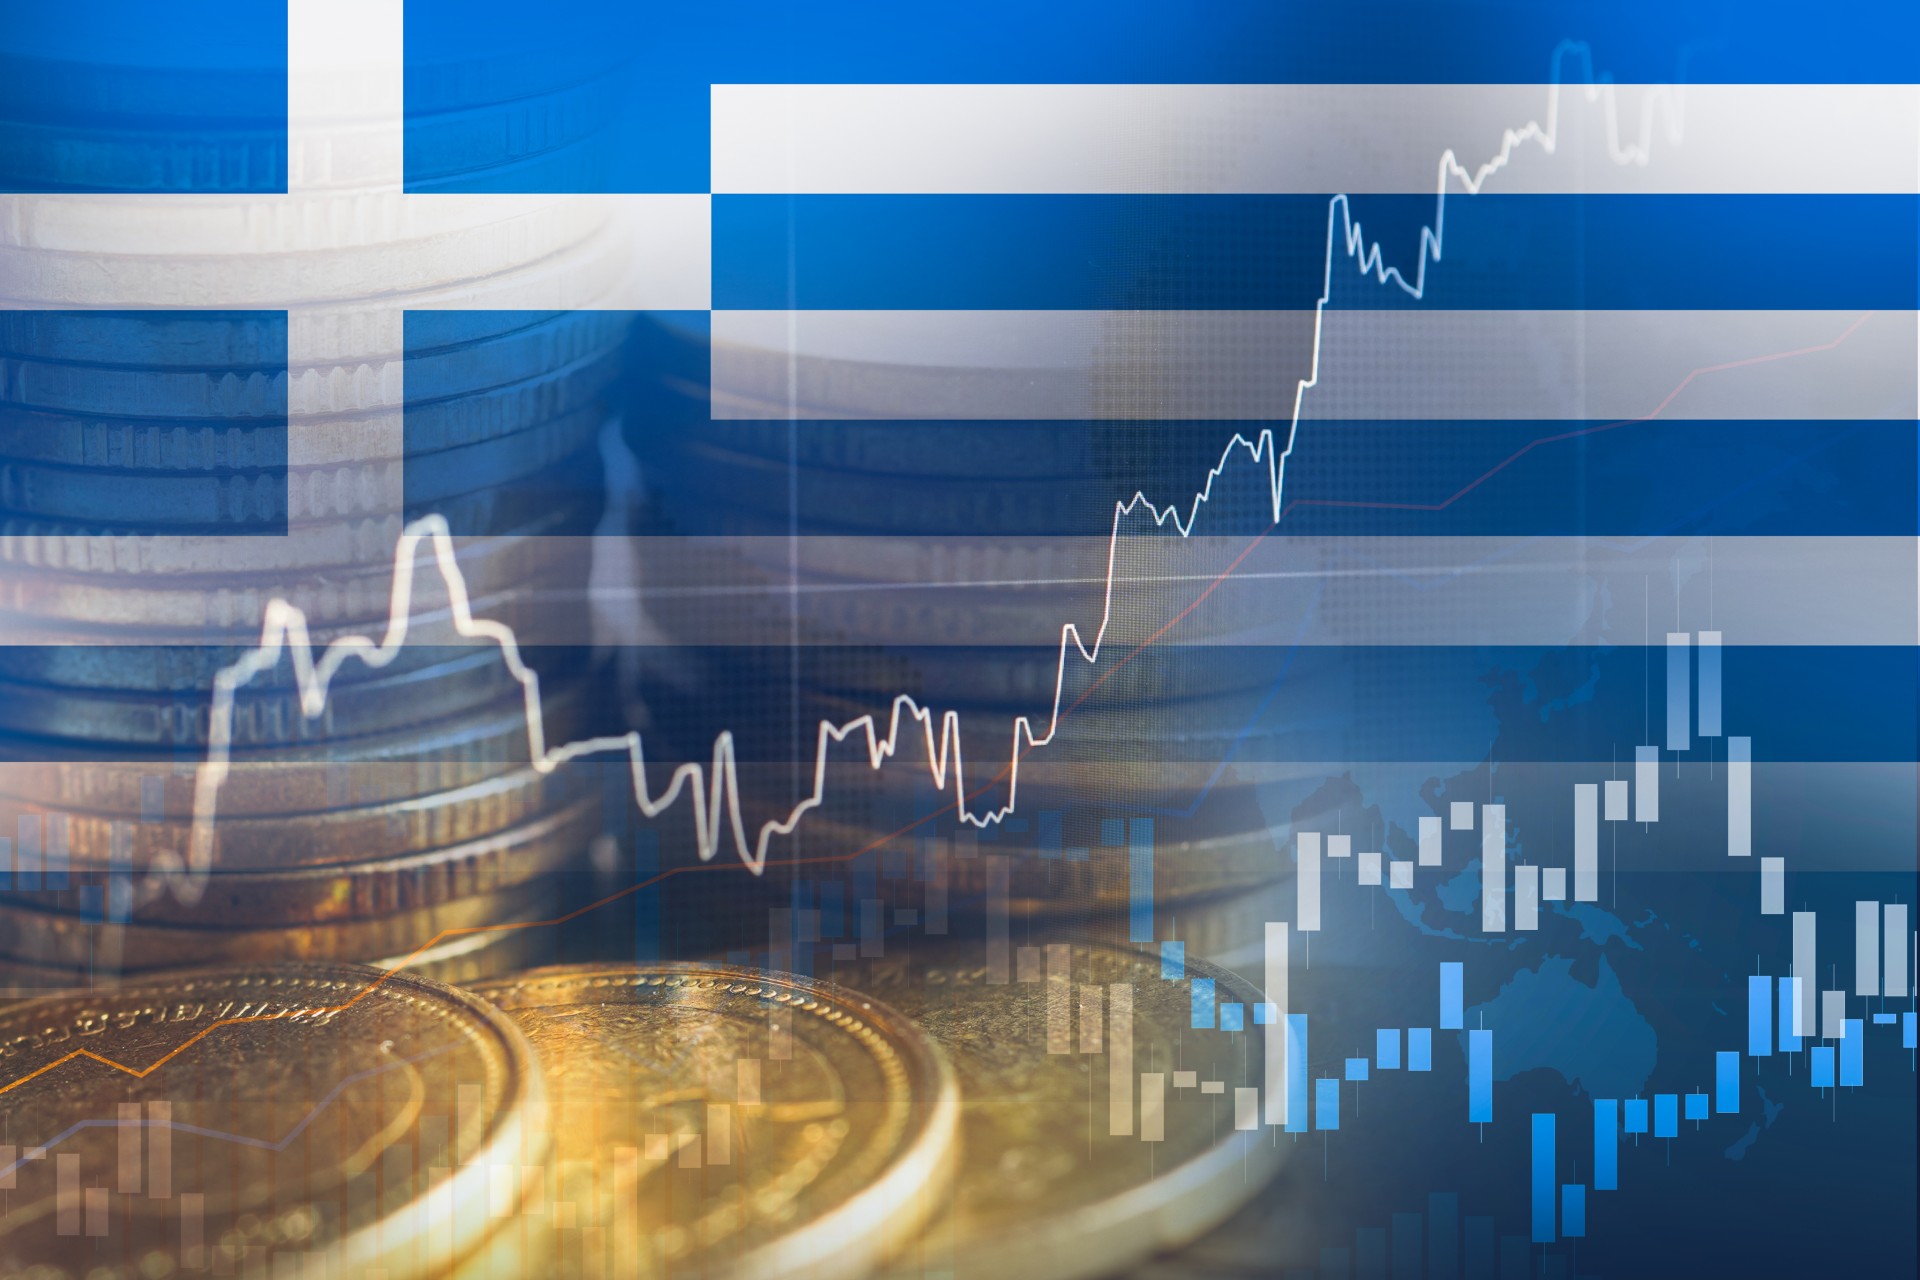 Ελληνική οικονομία: Οι υψηλές επιδόσεις – Οι προκλήσεις – Οι κίνδυνοι • Η ανάκτηση της επενδυτικής βαθμίδας, και η ευκαιρία για περαιτέρω βελτίωση των επιδόσεων της ελληνικής οικονομίας σε ένα δύσκολο διεθνές περιβάλλον